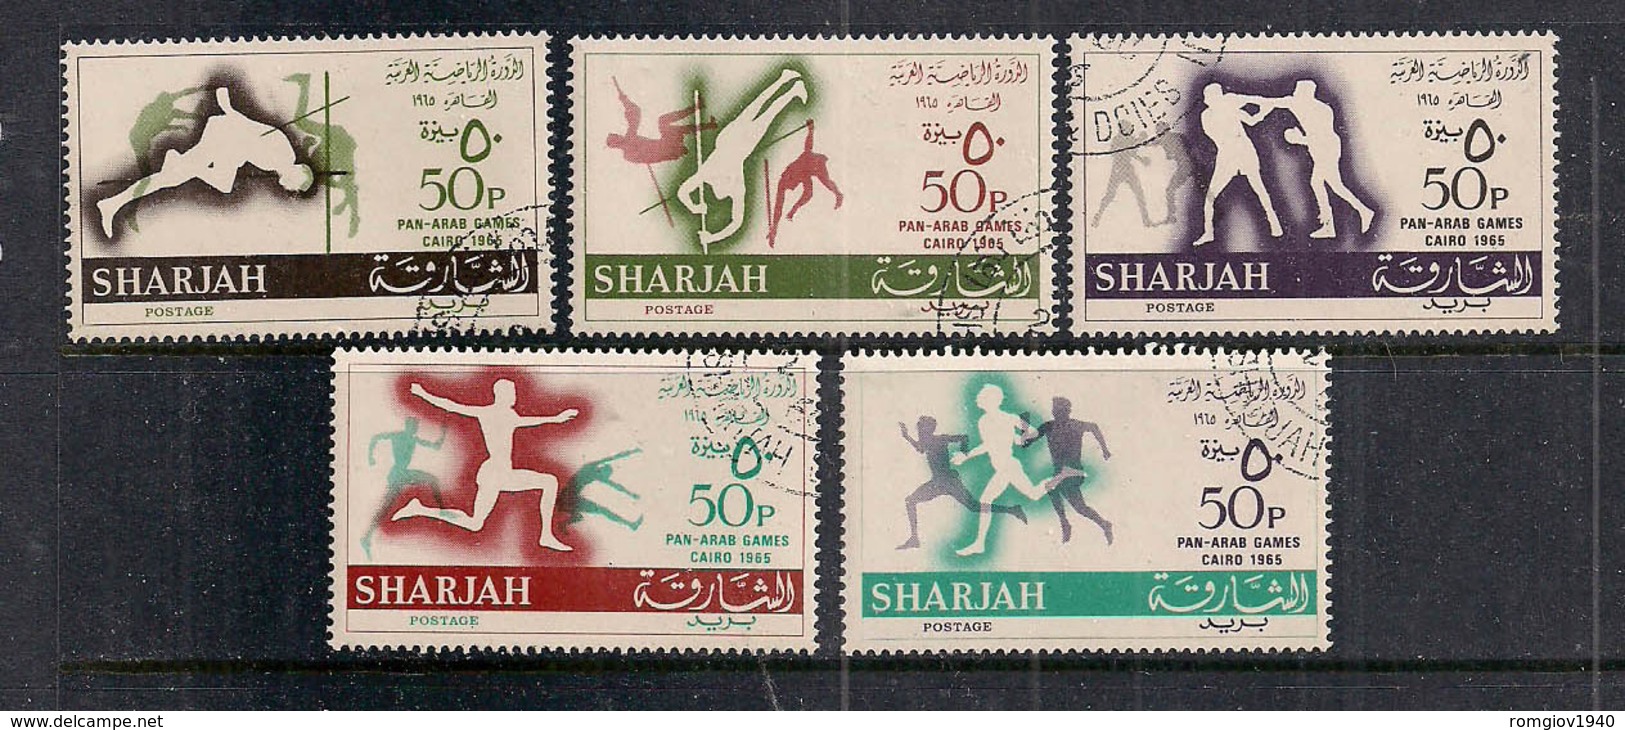 ARABIA SAUDITA  SHARJAH  1965   GIOCHI DEL CAIRO   YVERT   122-126   USATA   XF - Arabia Saudita